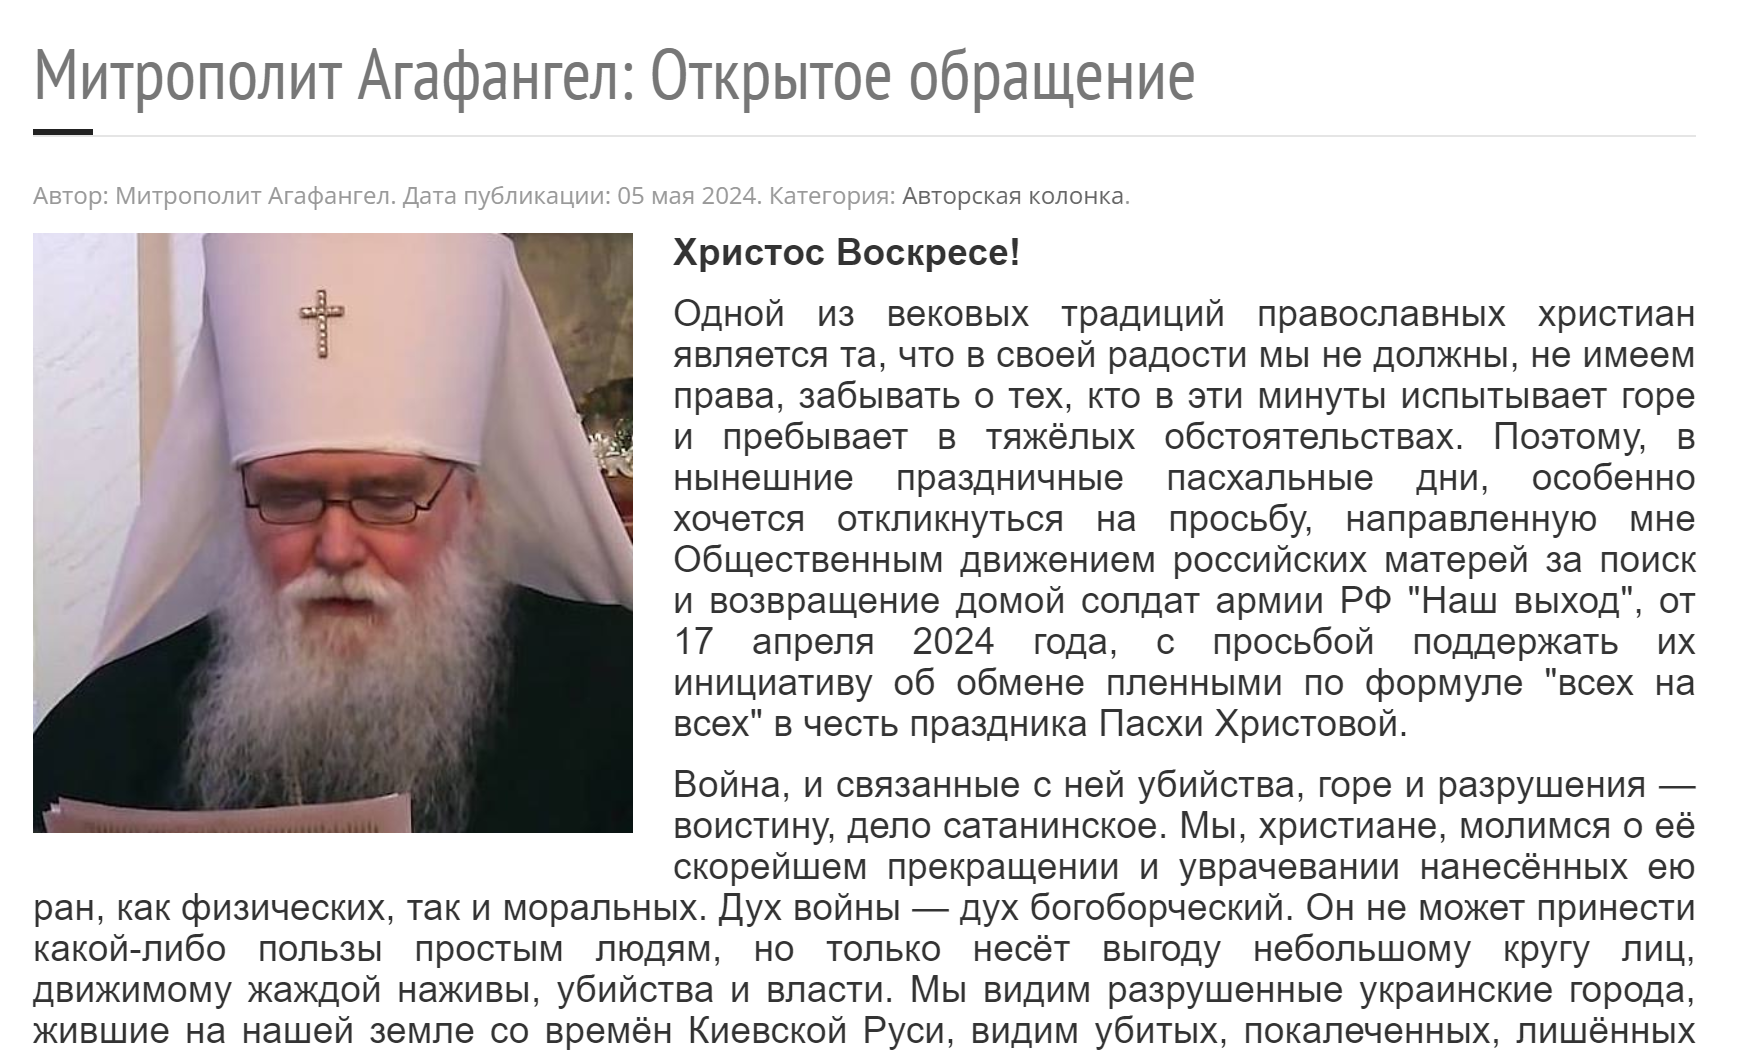 РПЦ за границей призвала к обмену пленными "всех на всех": официальное заявление